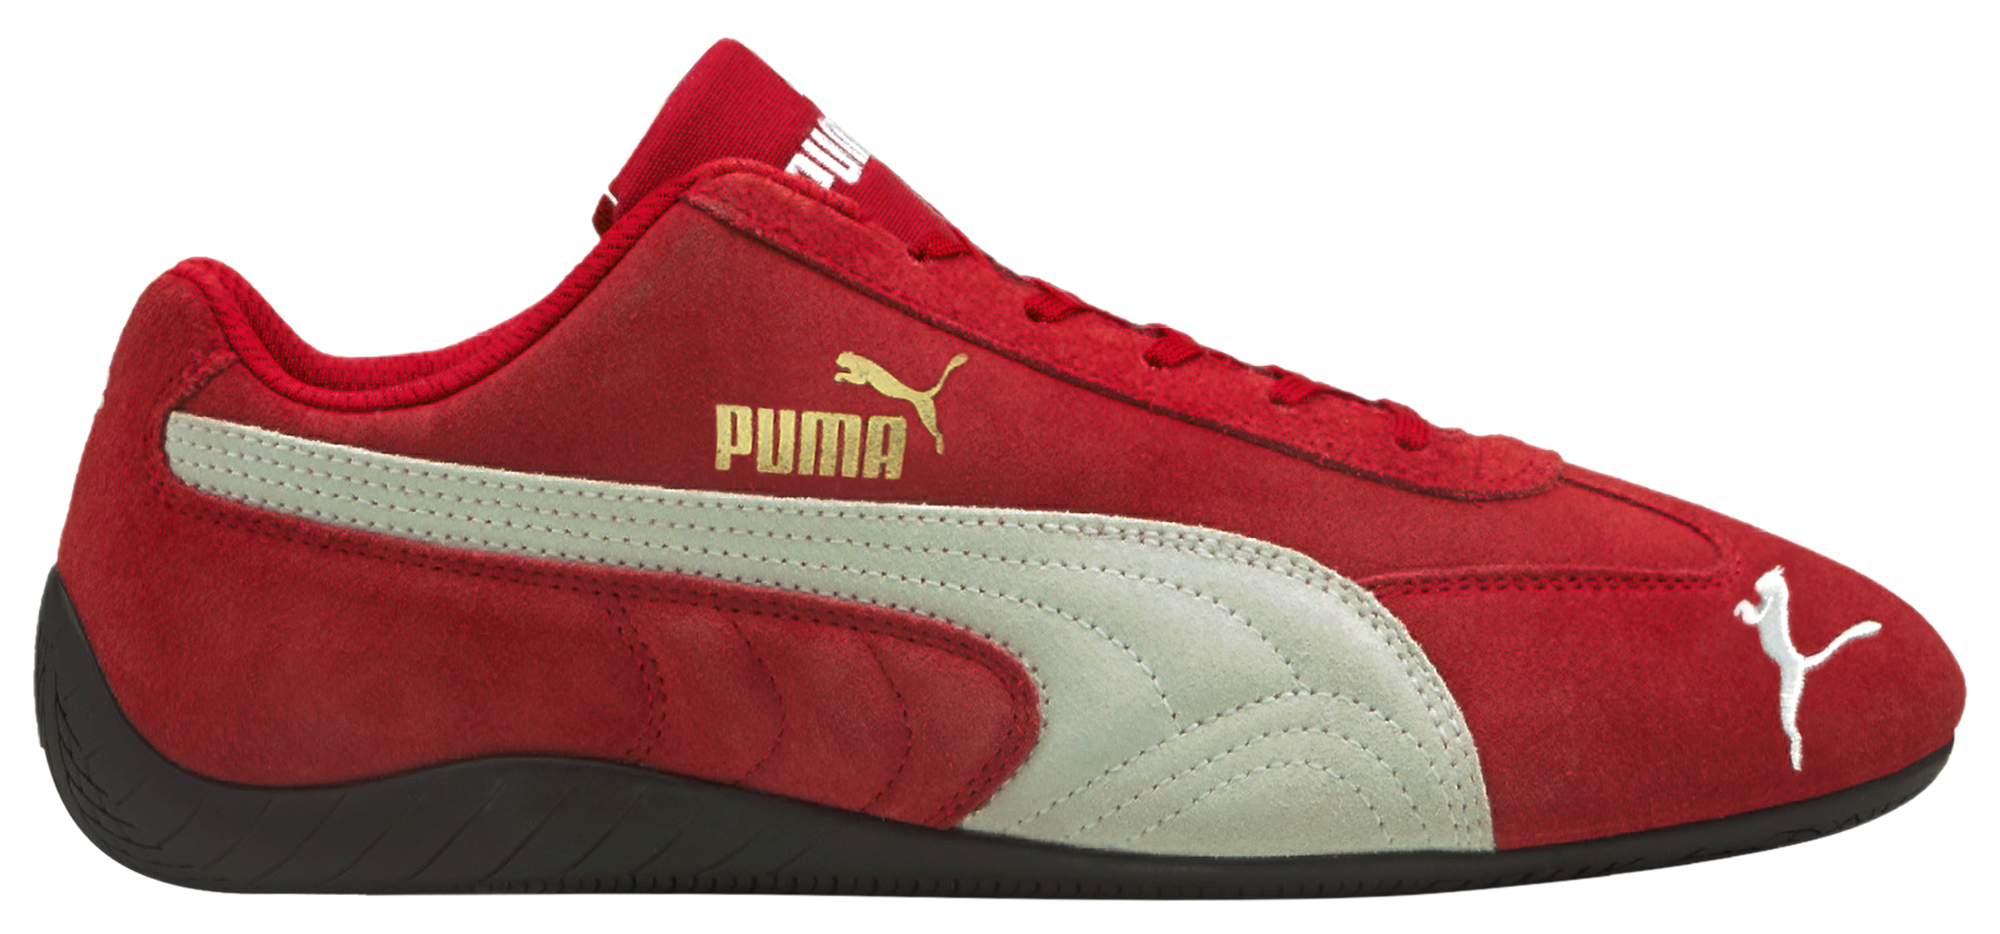 Shoes Sparco Puma Speedcat Red Radne | lupon.gov.ph